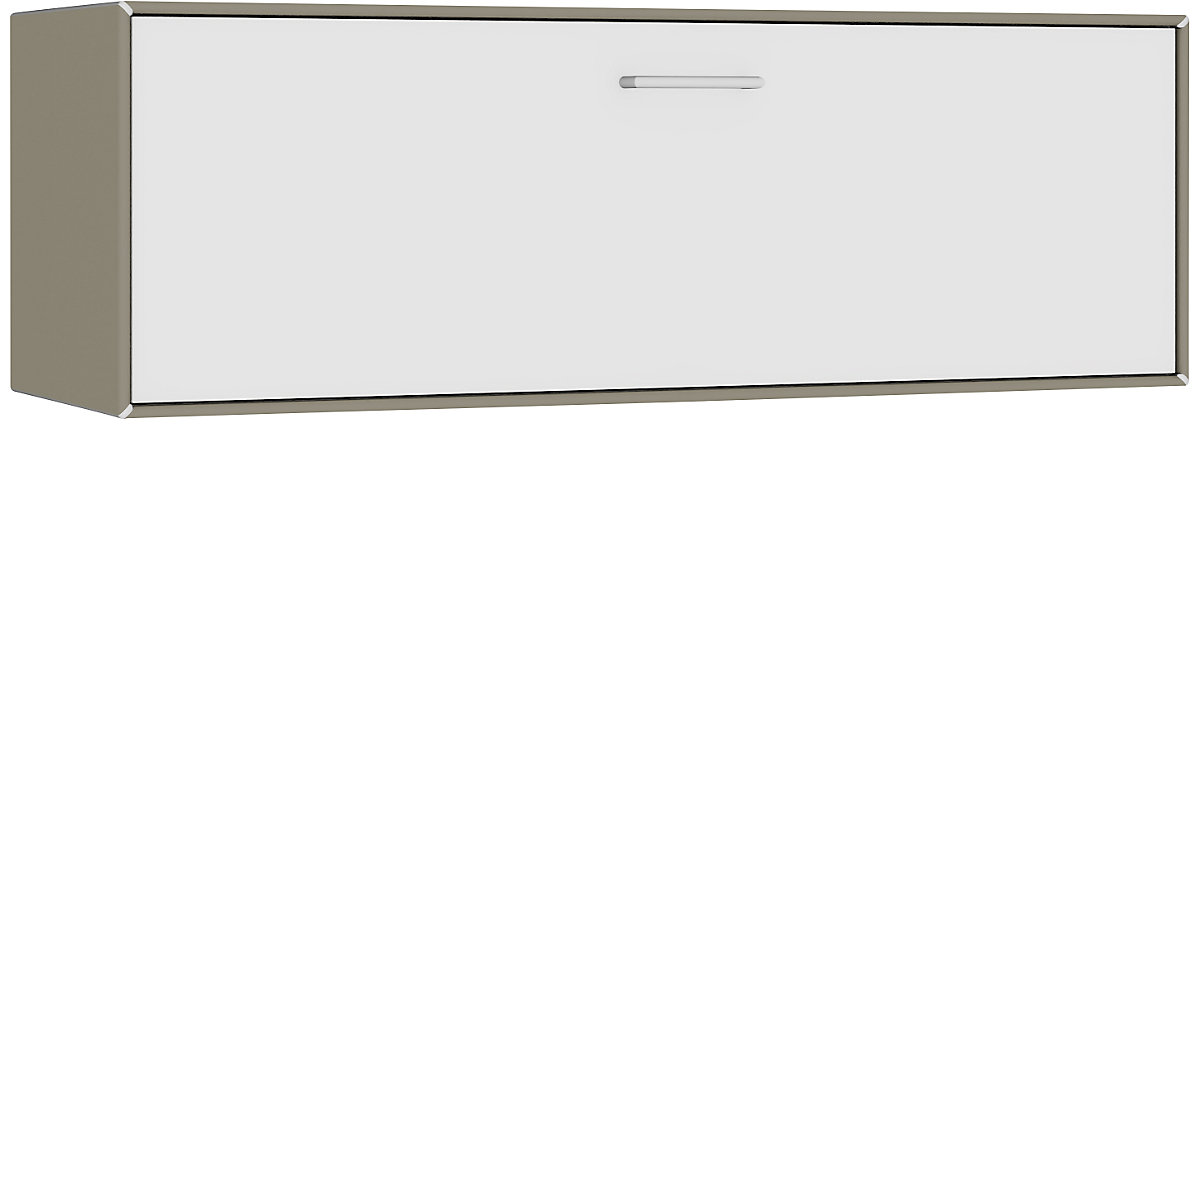 Cuie individuală, suspendată – mauser, 1 sertar, lățime 1155 mm, gri-bej / alb pur-3